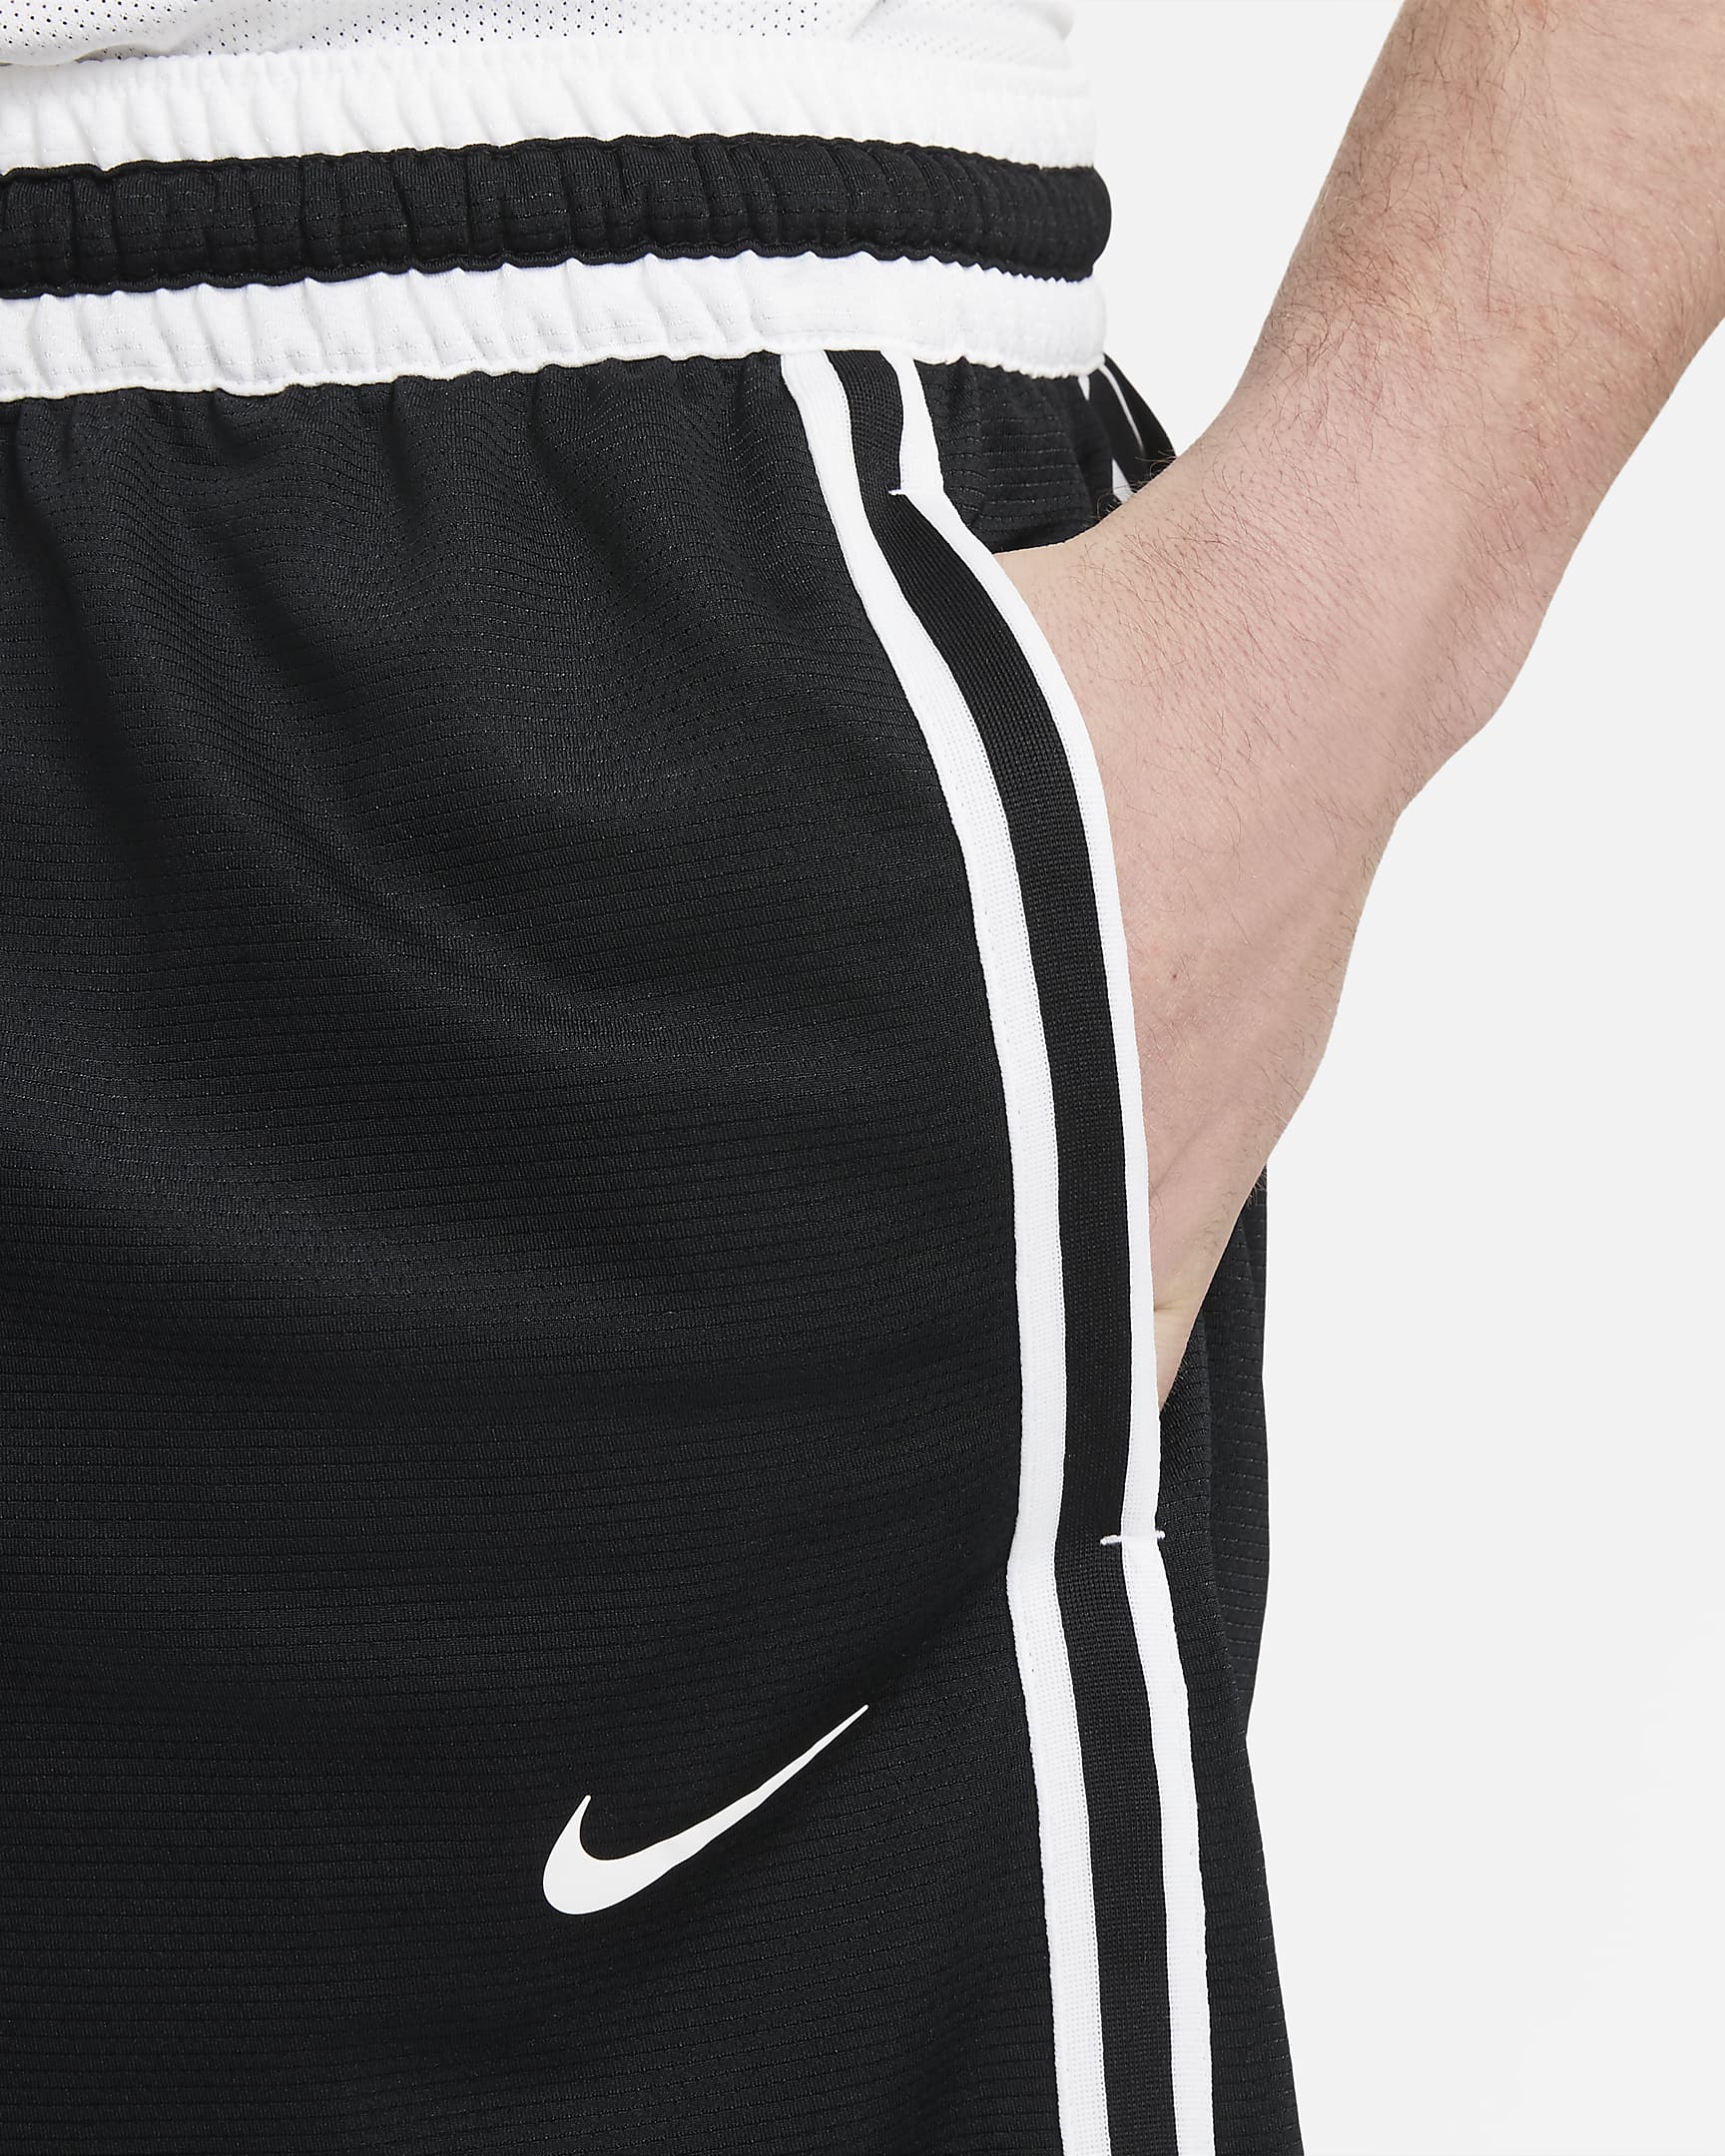 Nike Dri-FIT DNA+ Men's Basketball Shorts. Nike.com